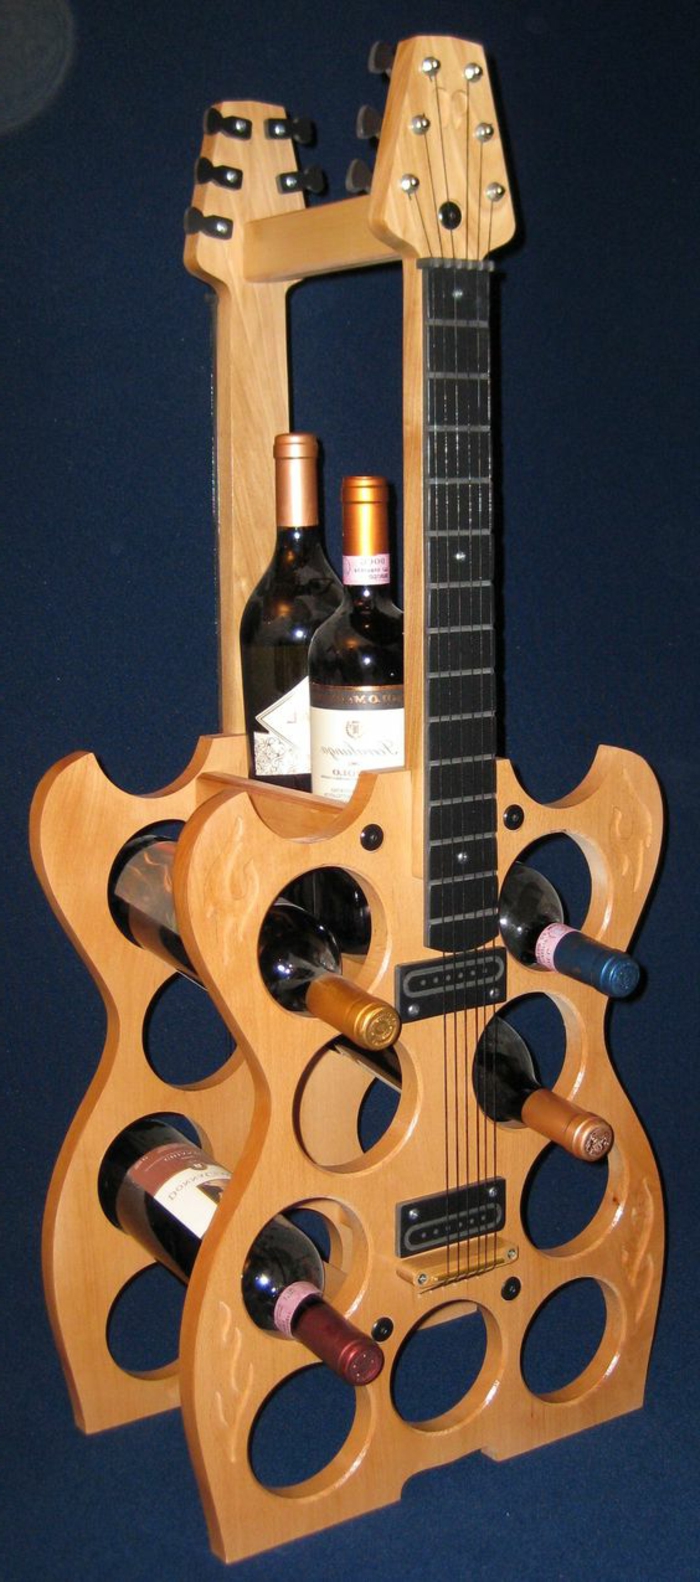 vinski stalak za zid ili za sobu kao ukras kako bi obnovili stare gitare i izradio ormar iz nje